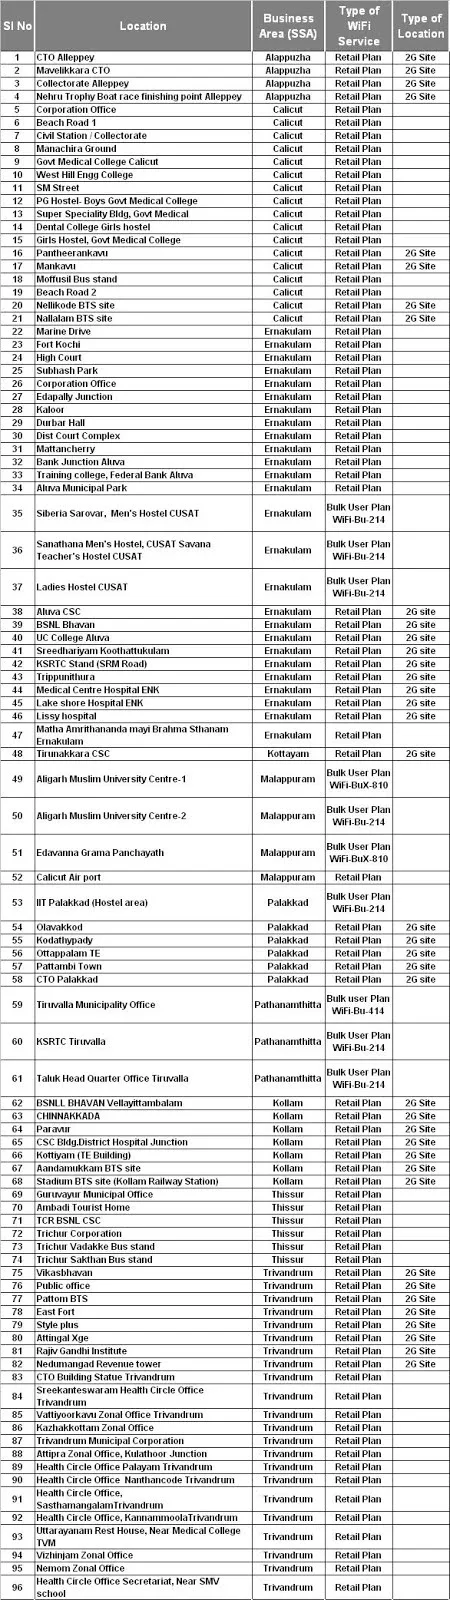 BSNL wiFi hotspot list as on 17-09-2016